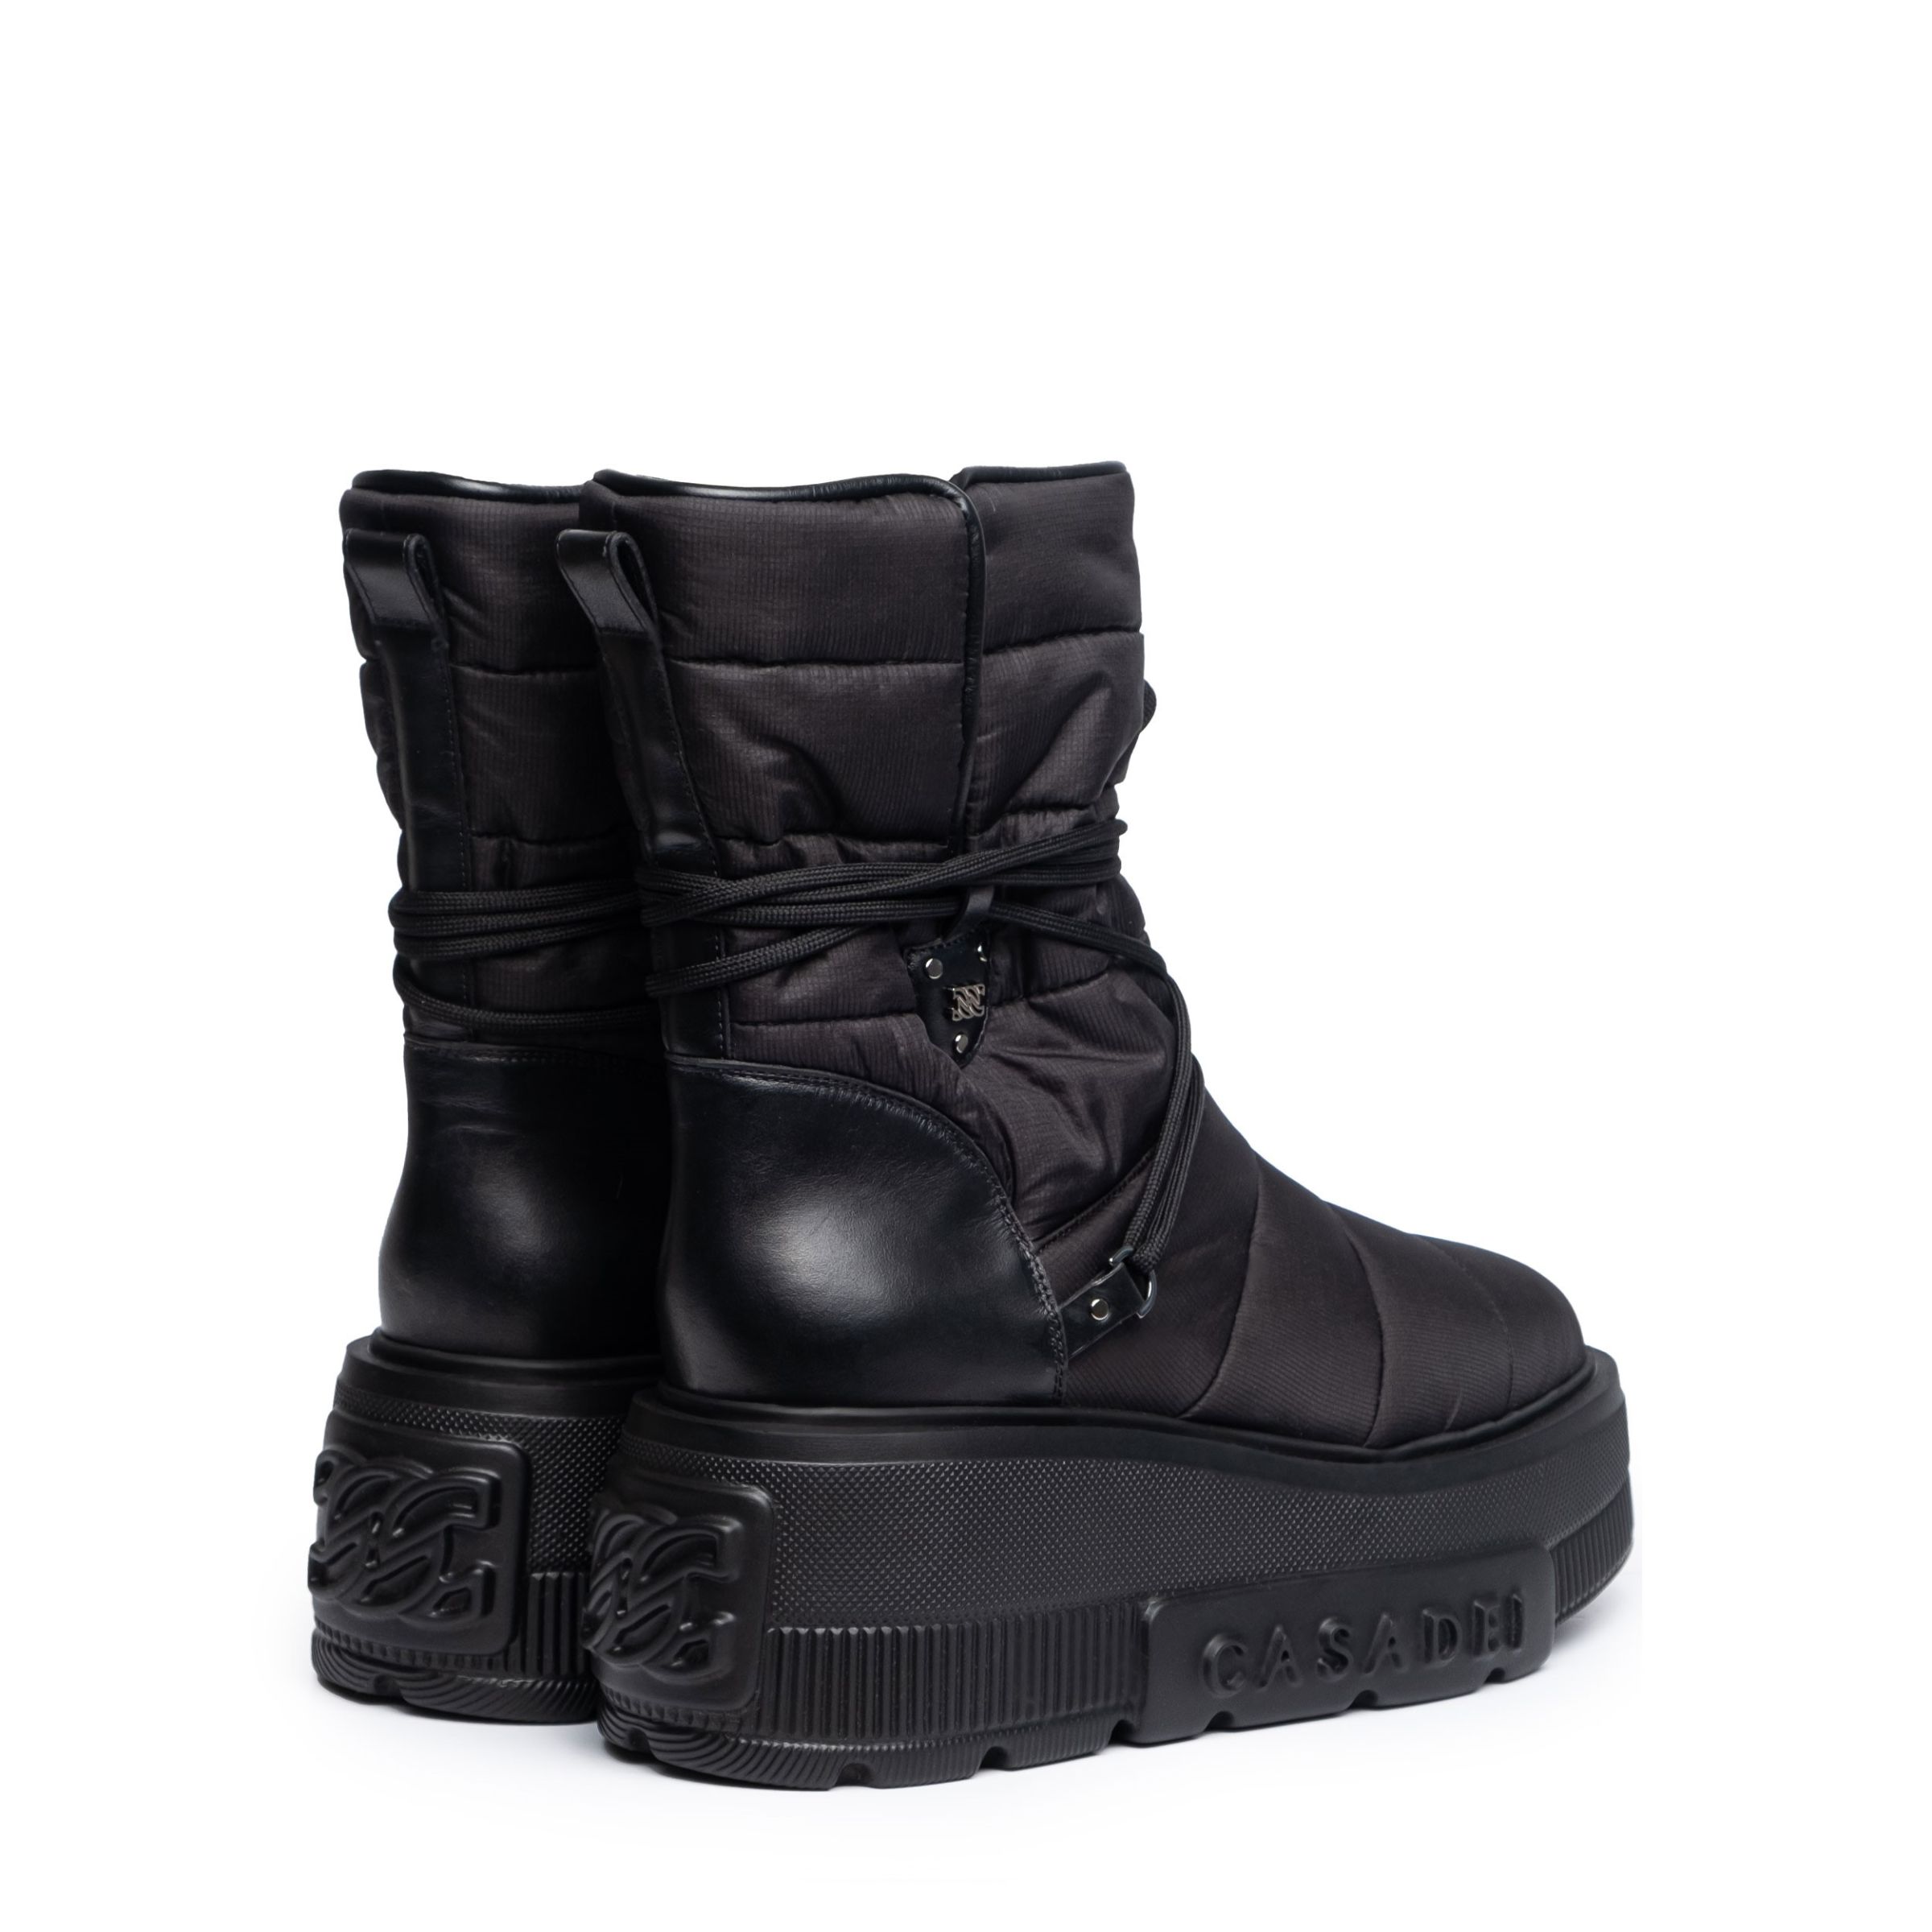 Ботинки Casadei NEXUS черные - 163655 - купить в интернет-магазине Сult